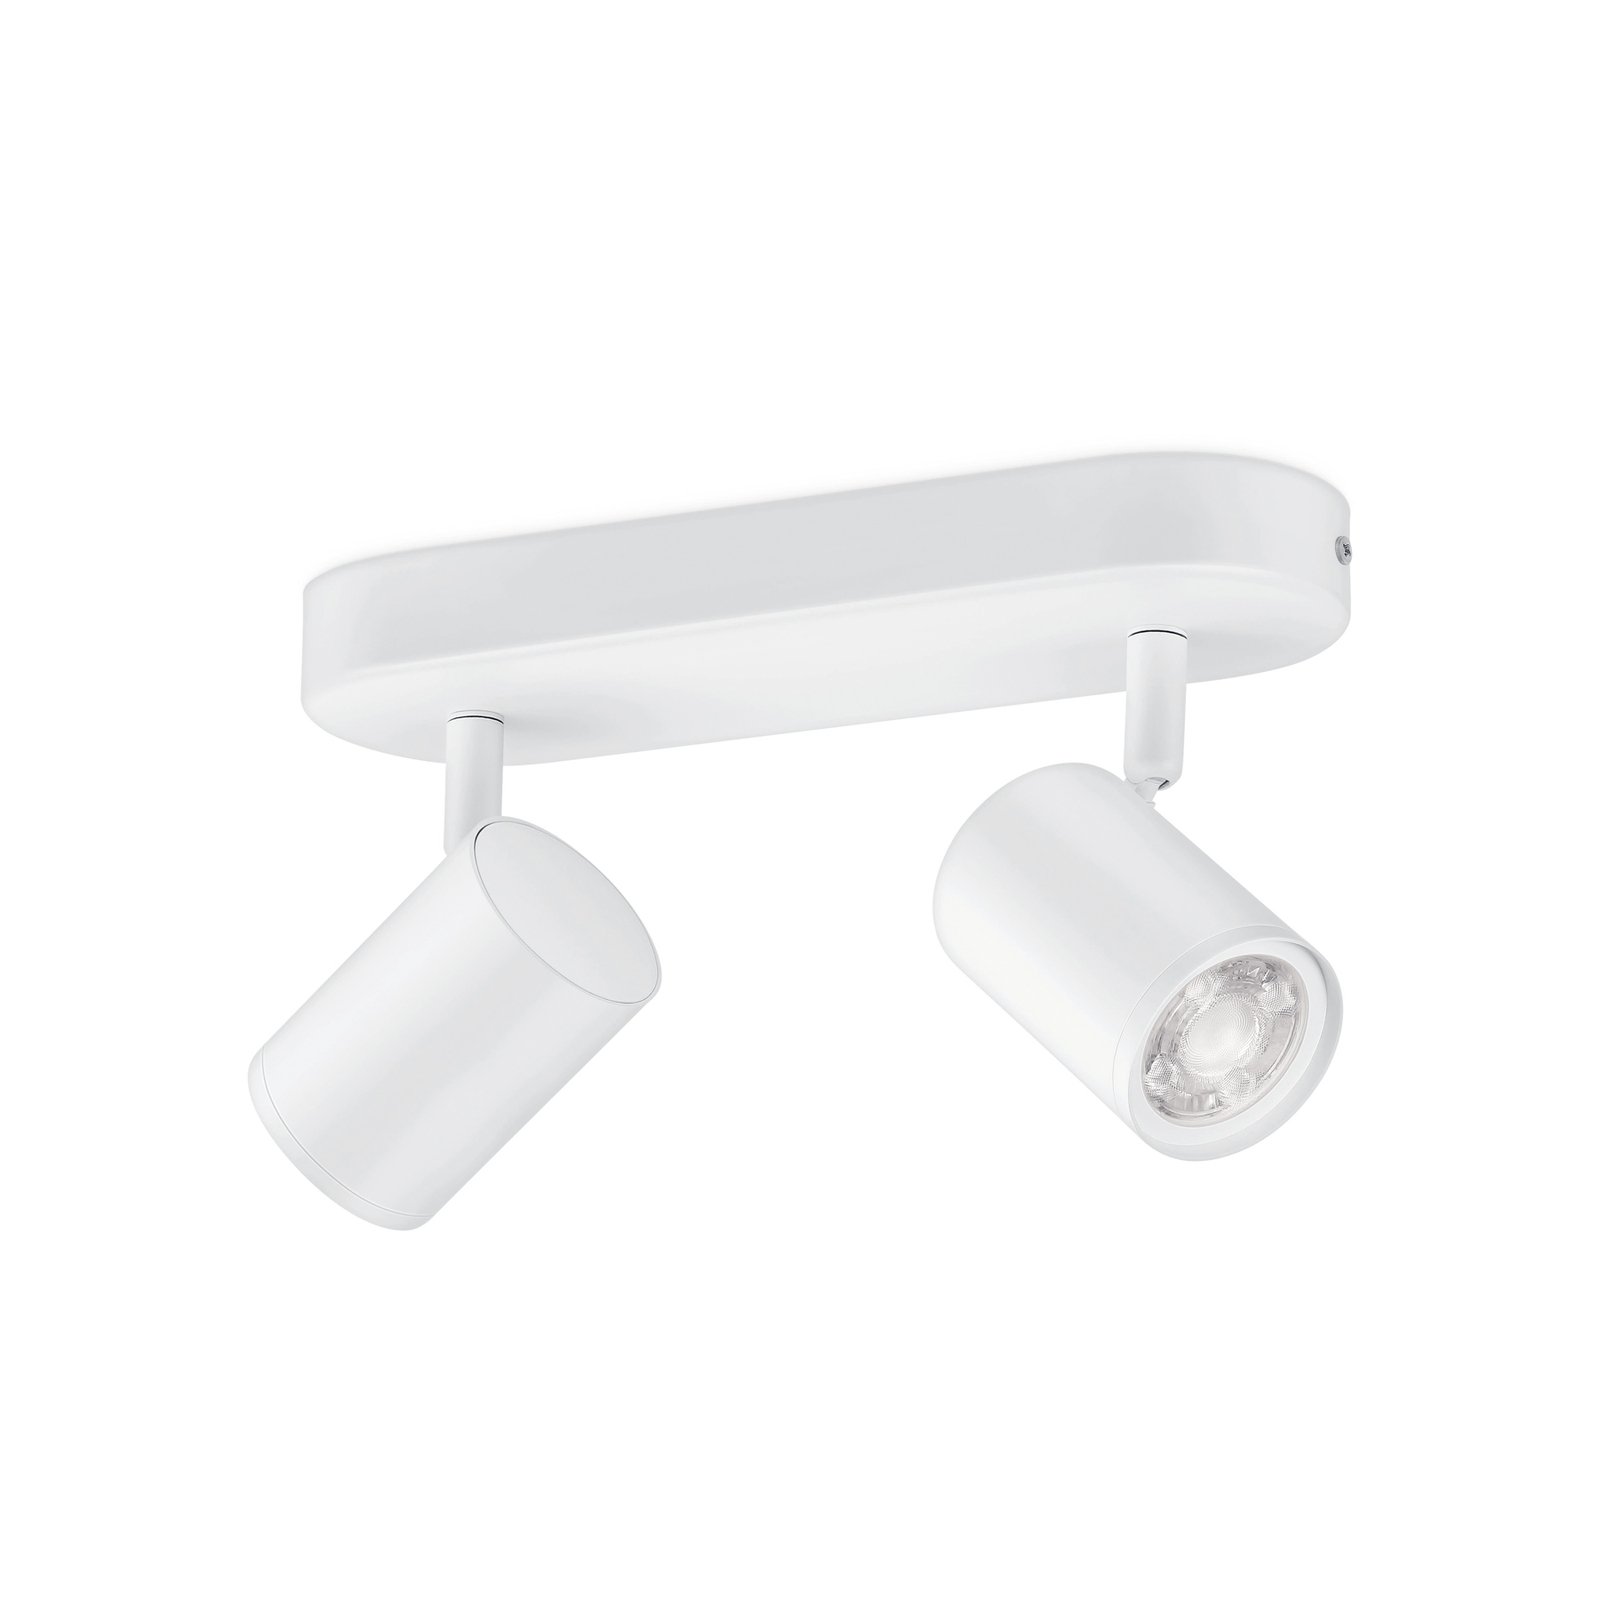 WiZ Imageo LED spot 2-bulb, 2,700-6,500 K, white